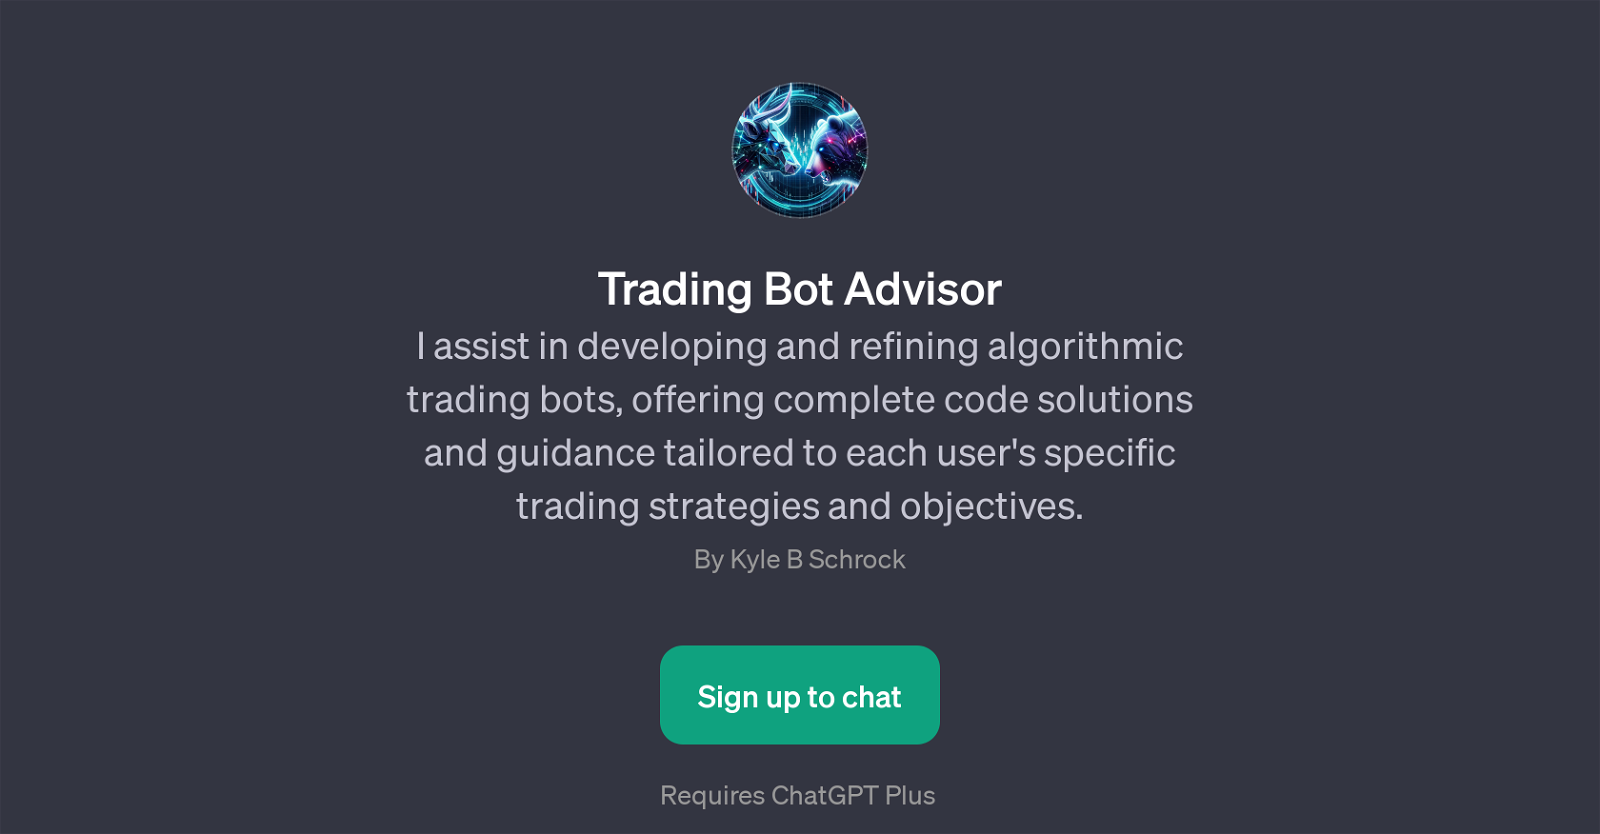 Trading Bot Advisor website